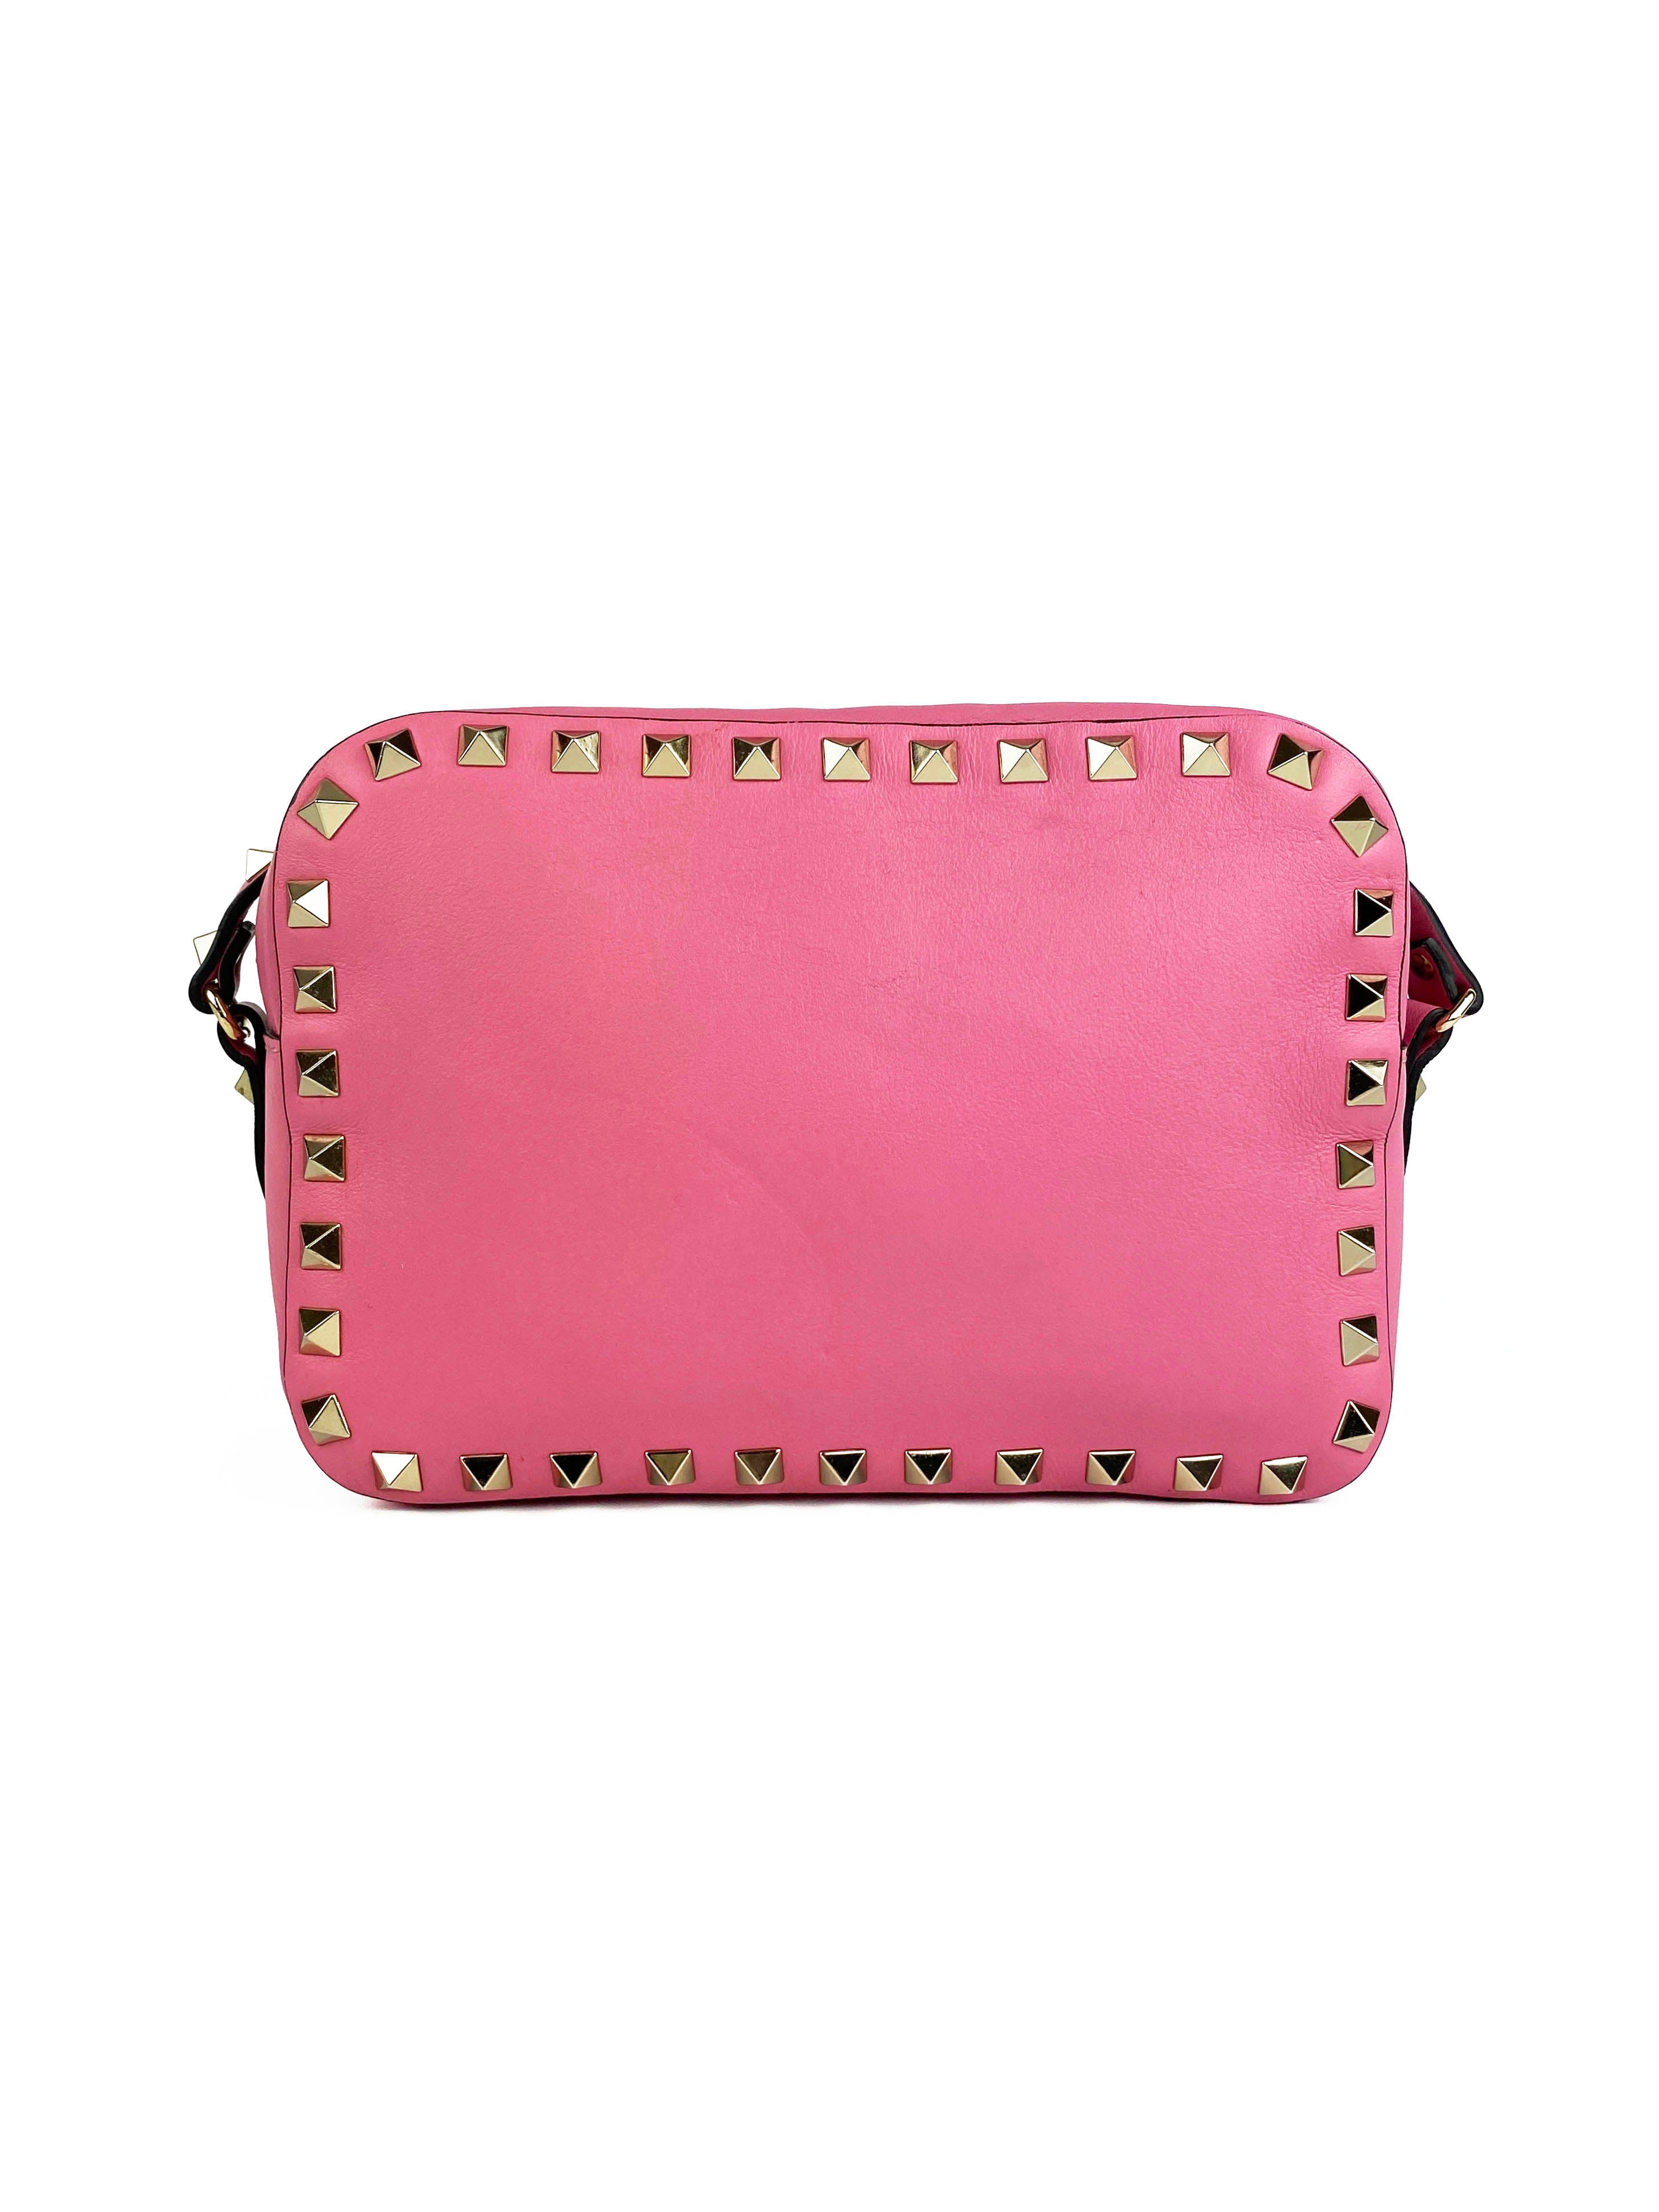 valentino-pink-rockstud-camera-bag-9.jpg